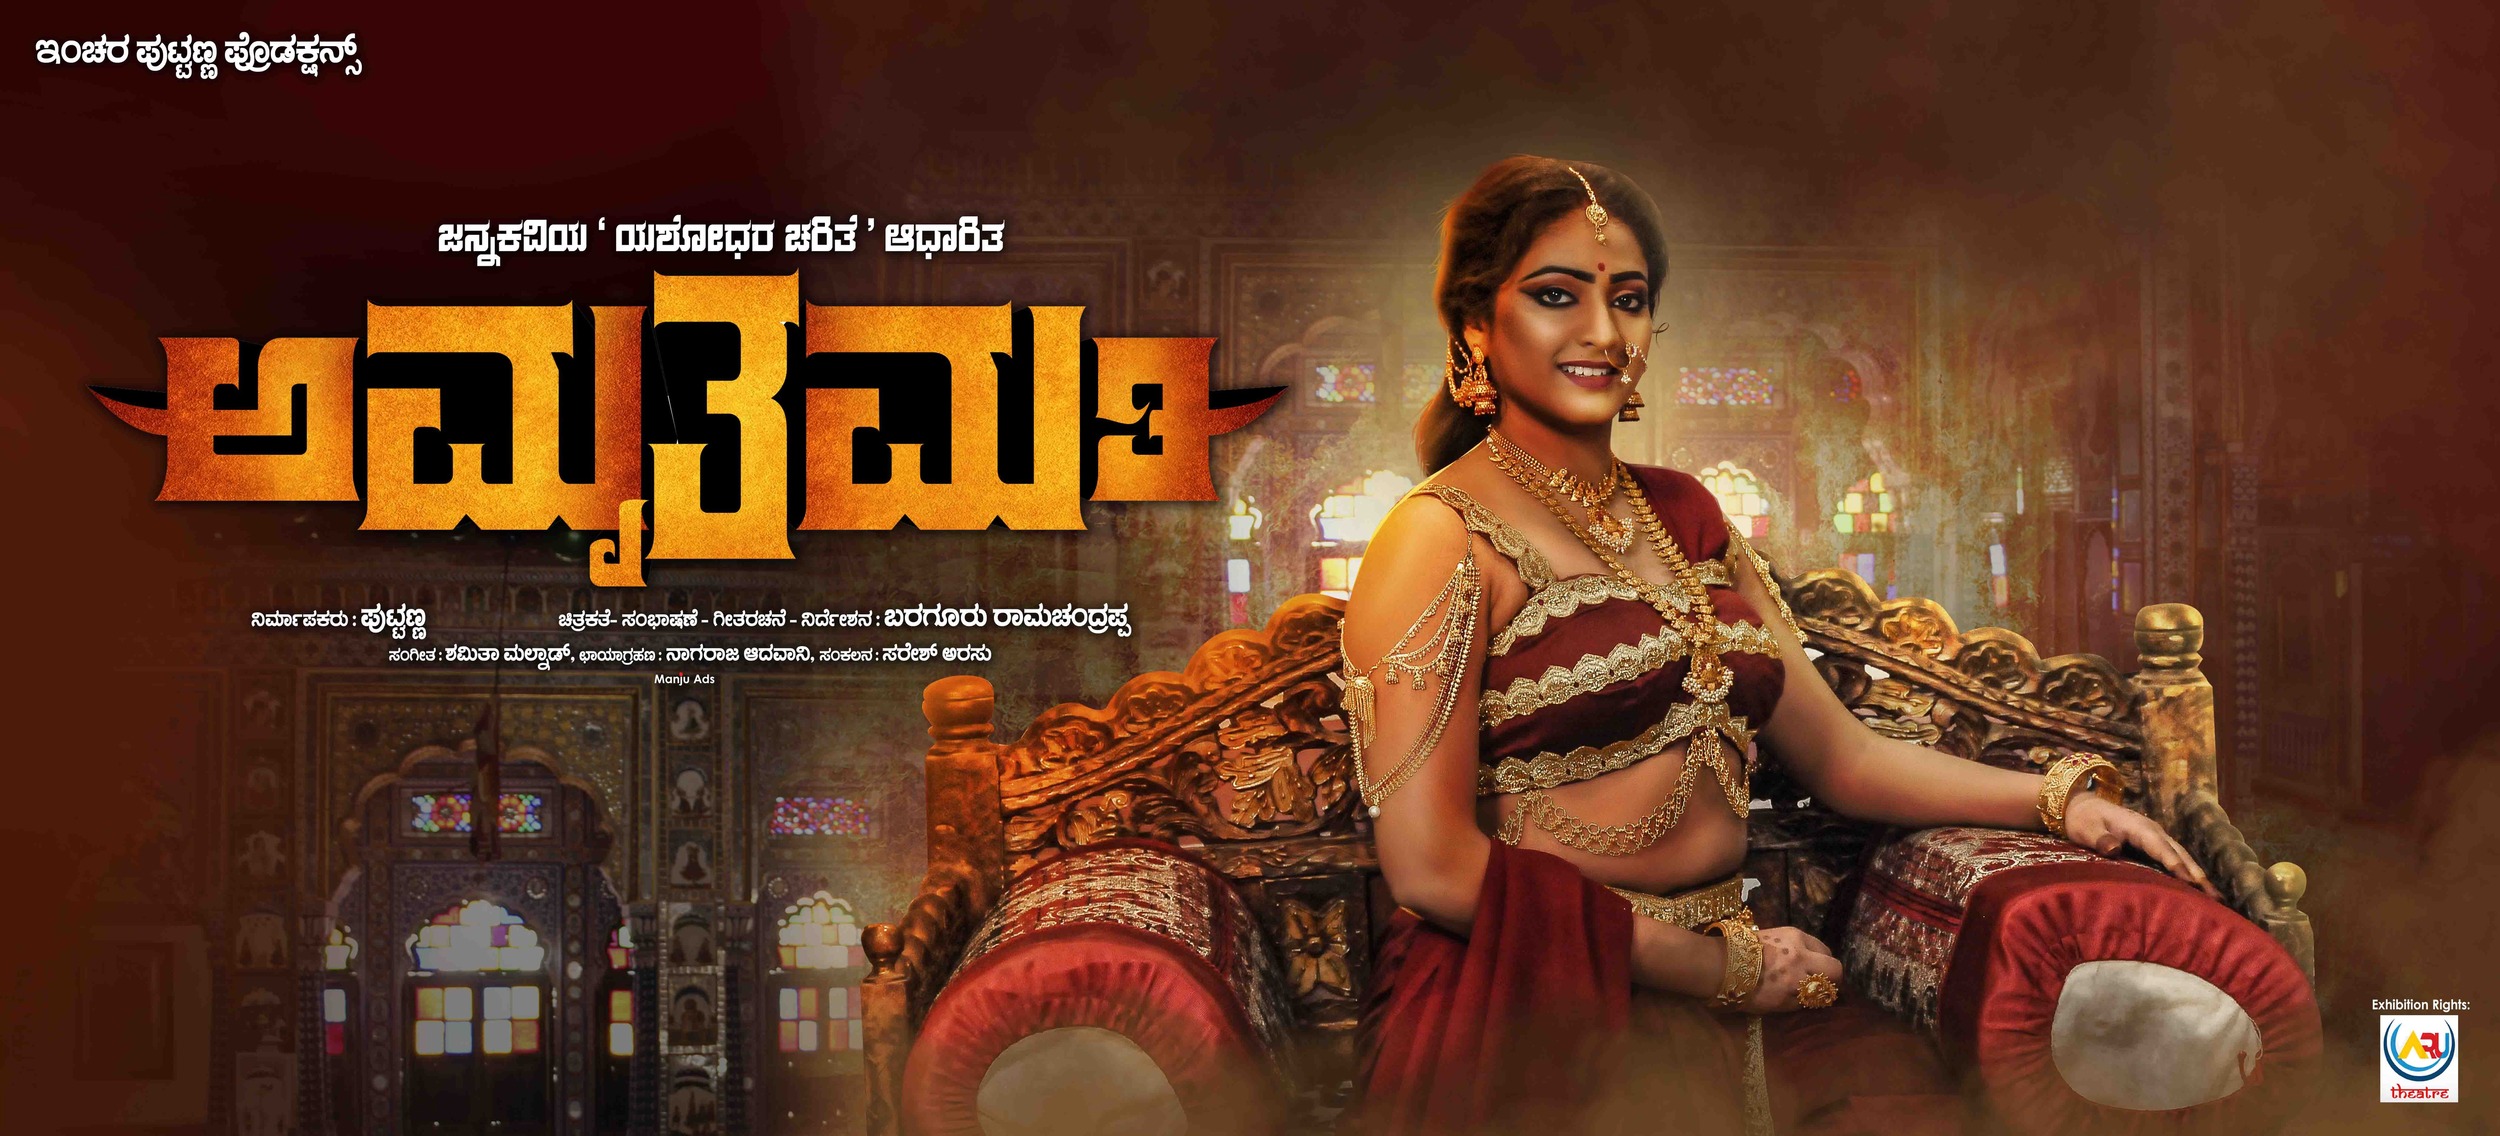 Mega Sized Movie Poster Image for Amruthamathi (#4 of 10)